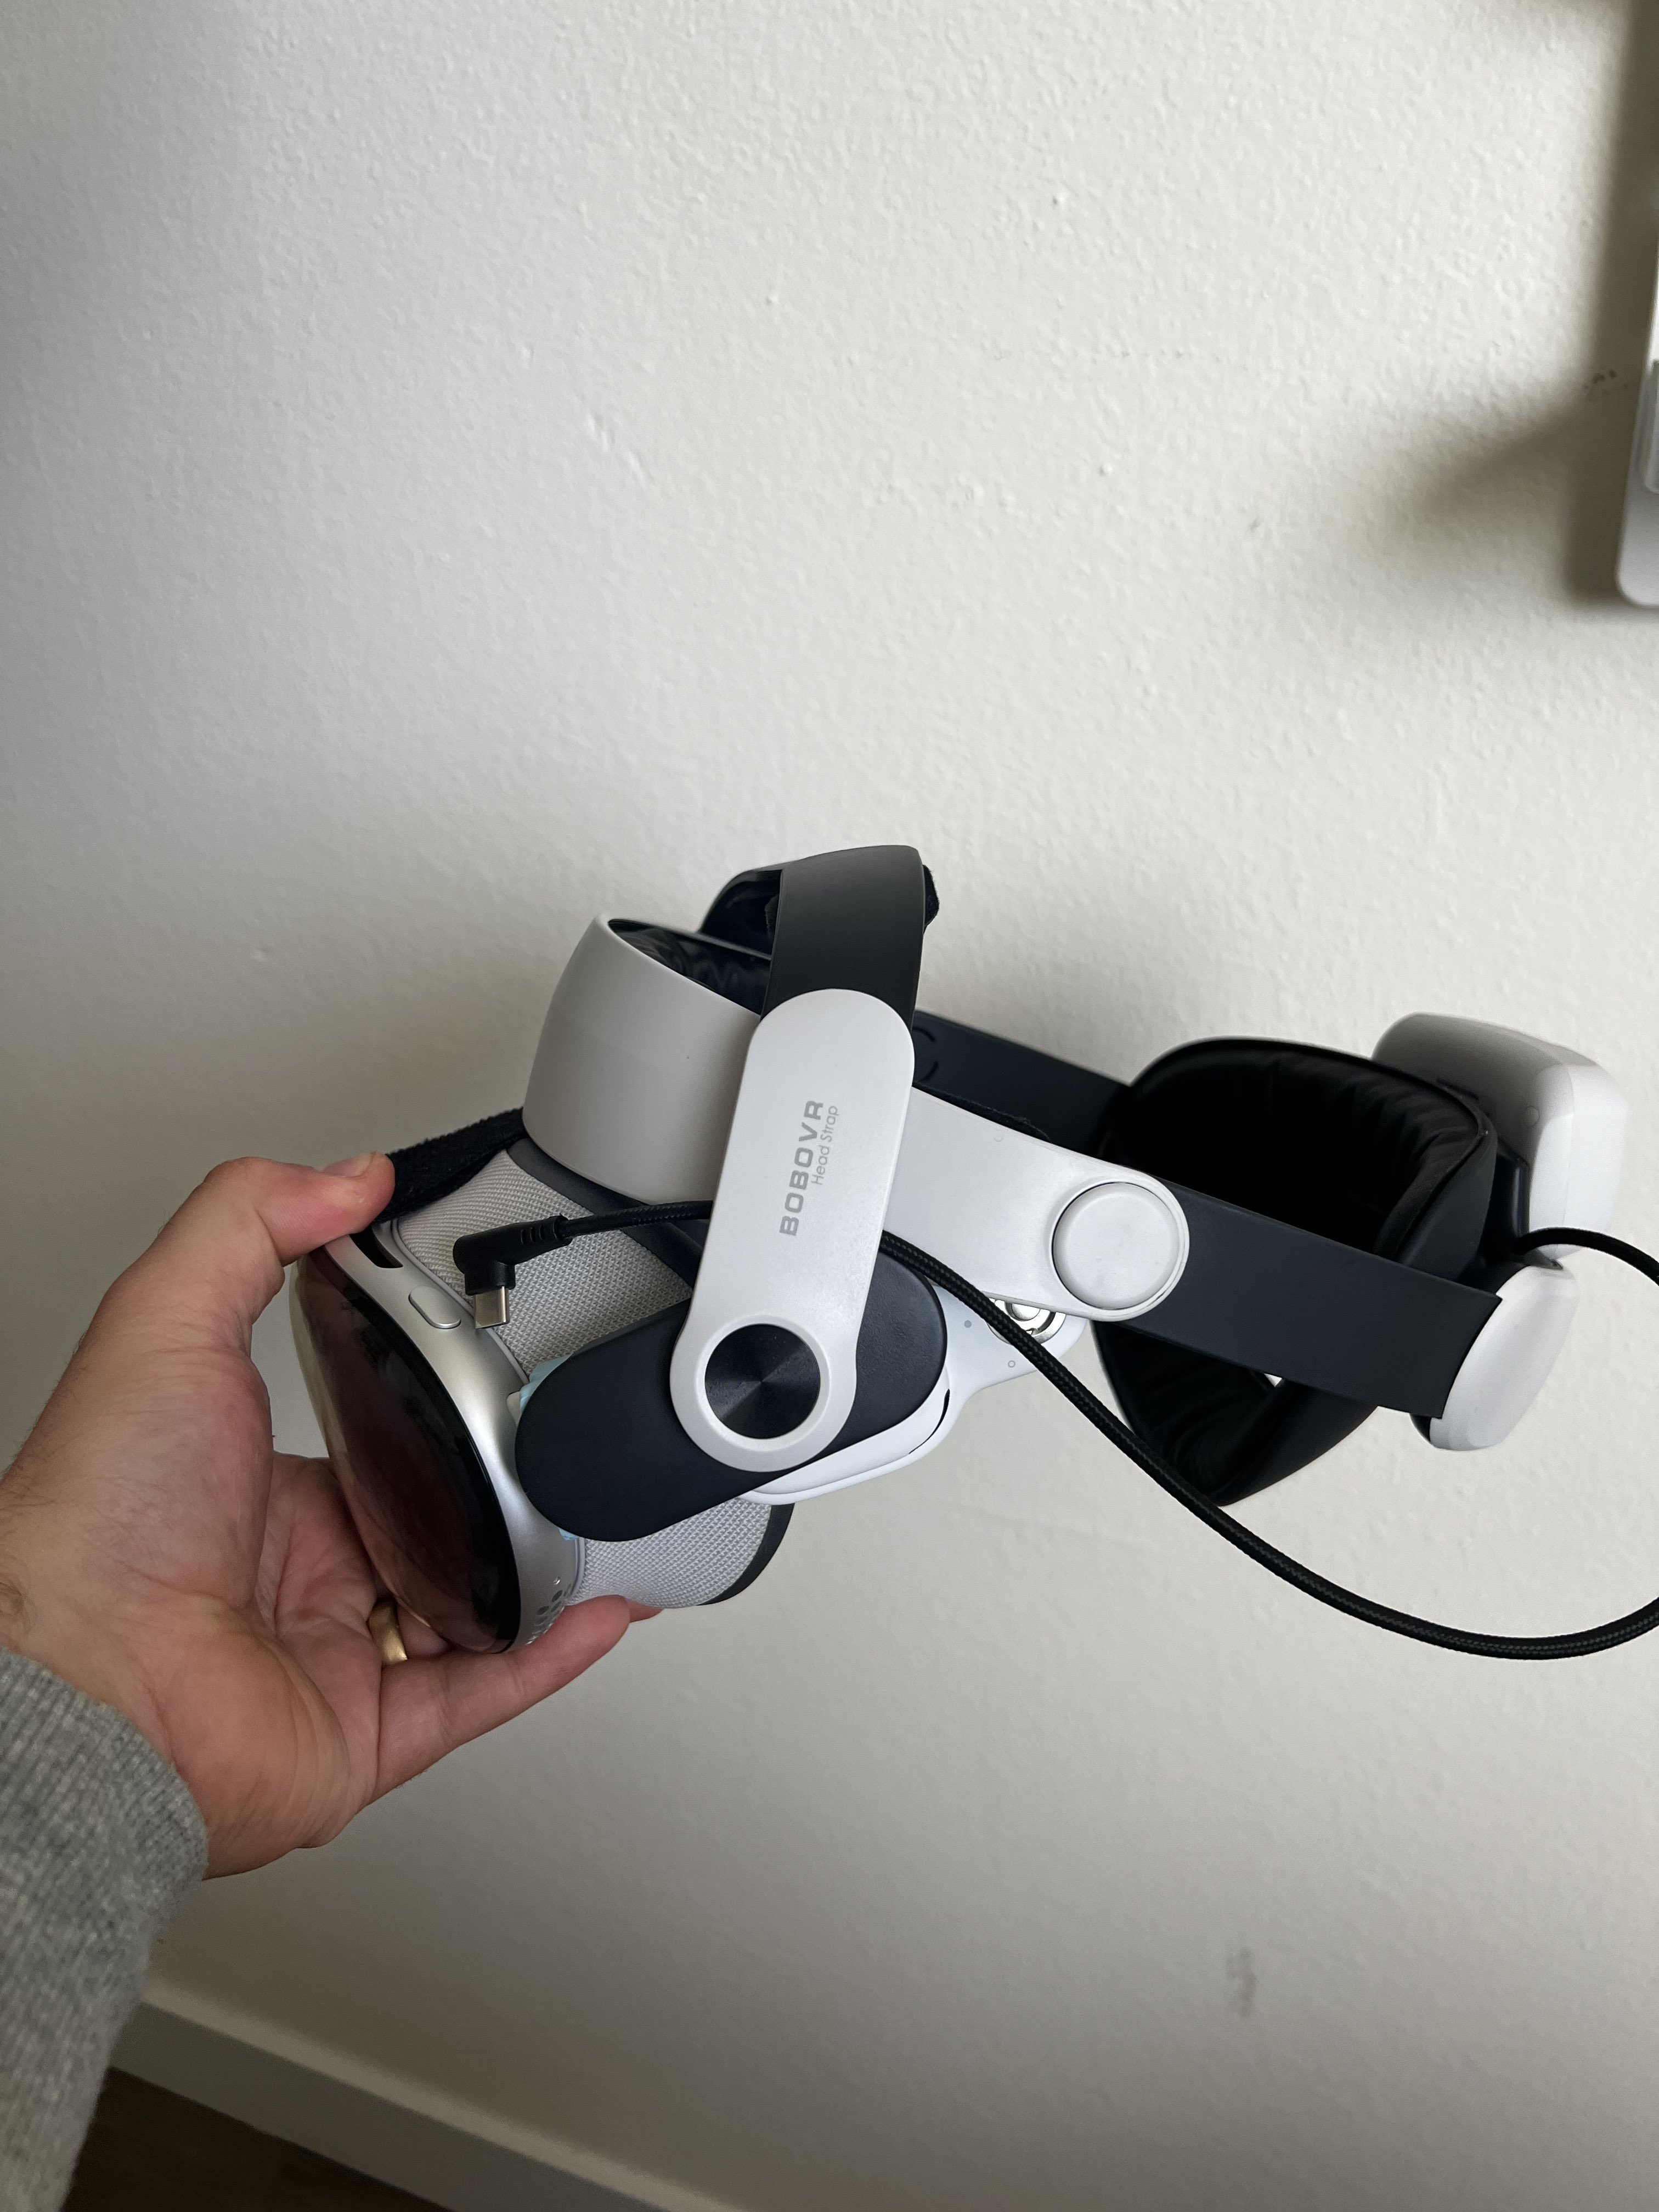 BOBOVR M3 Mini Head Strap Compatible with Meta Quest 3 – Virtual